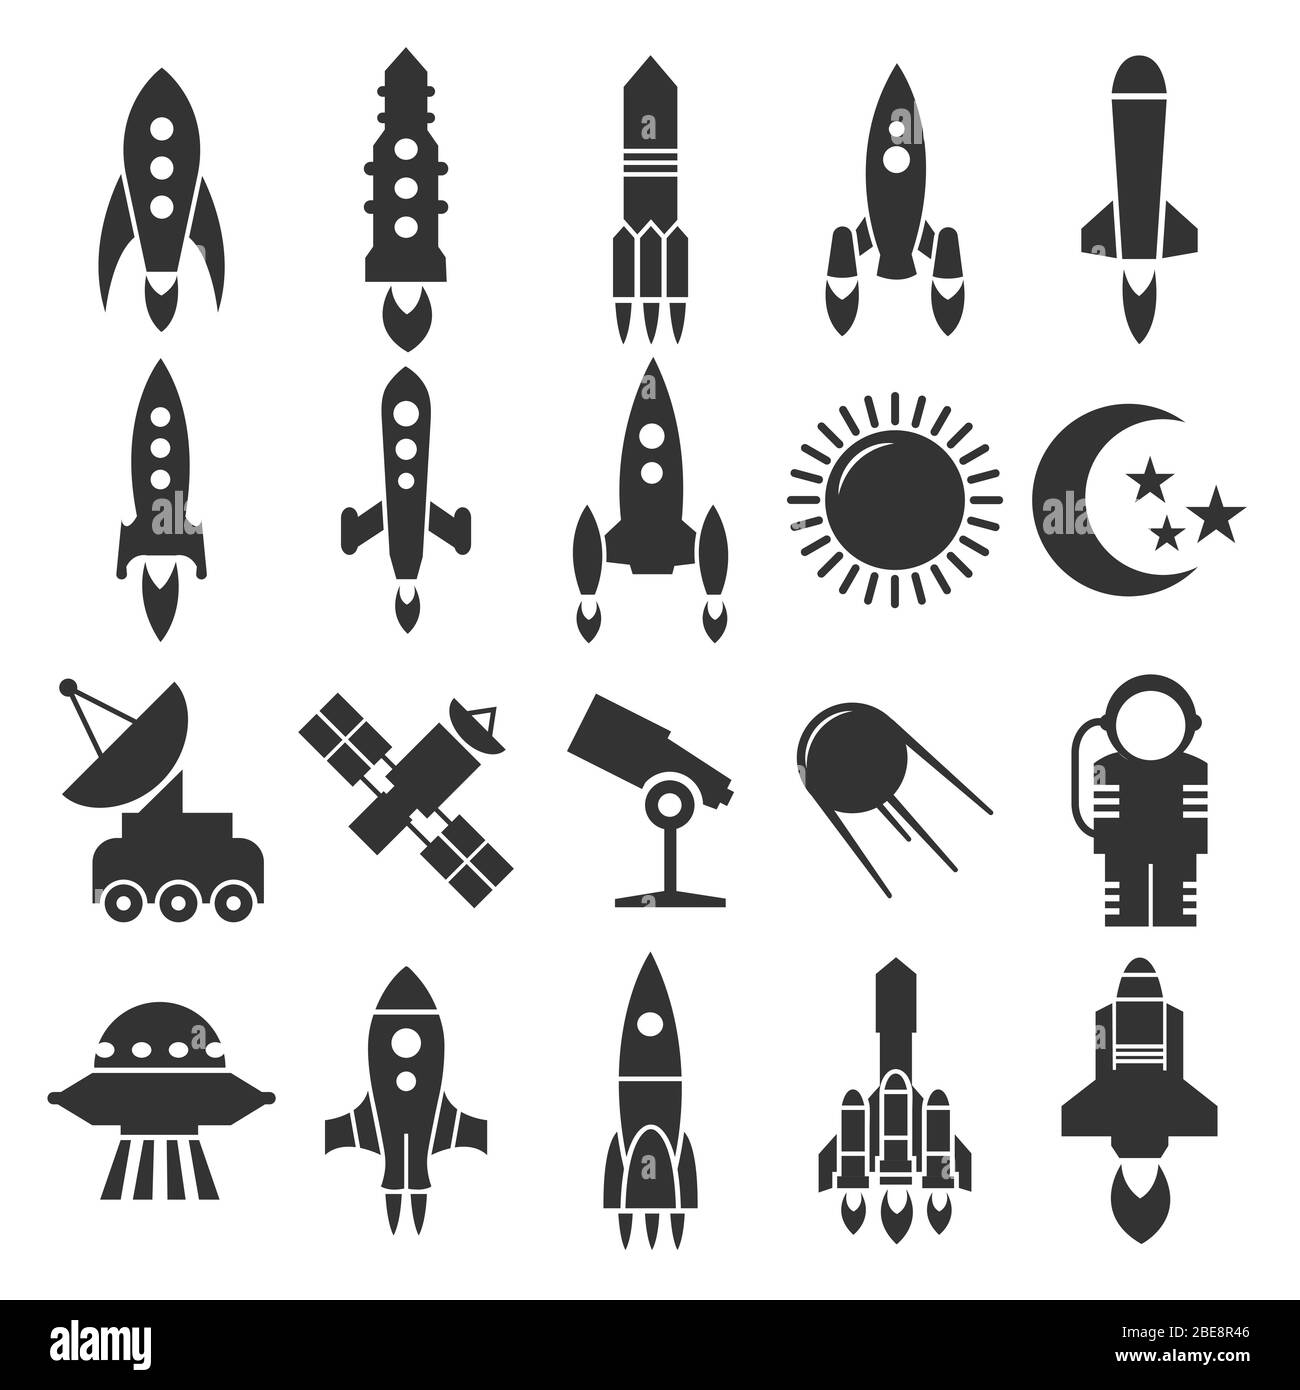 Rakete und Raumschiff, Astronomie-Ikonen Design. Raumschiff und Satellit, Vektorgrafik Stock Vektor